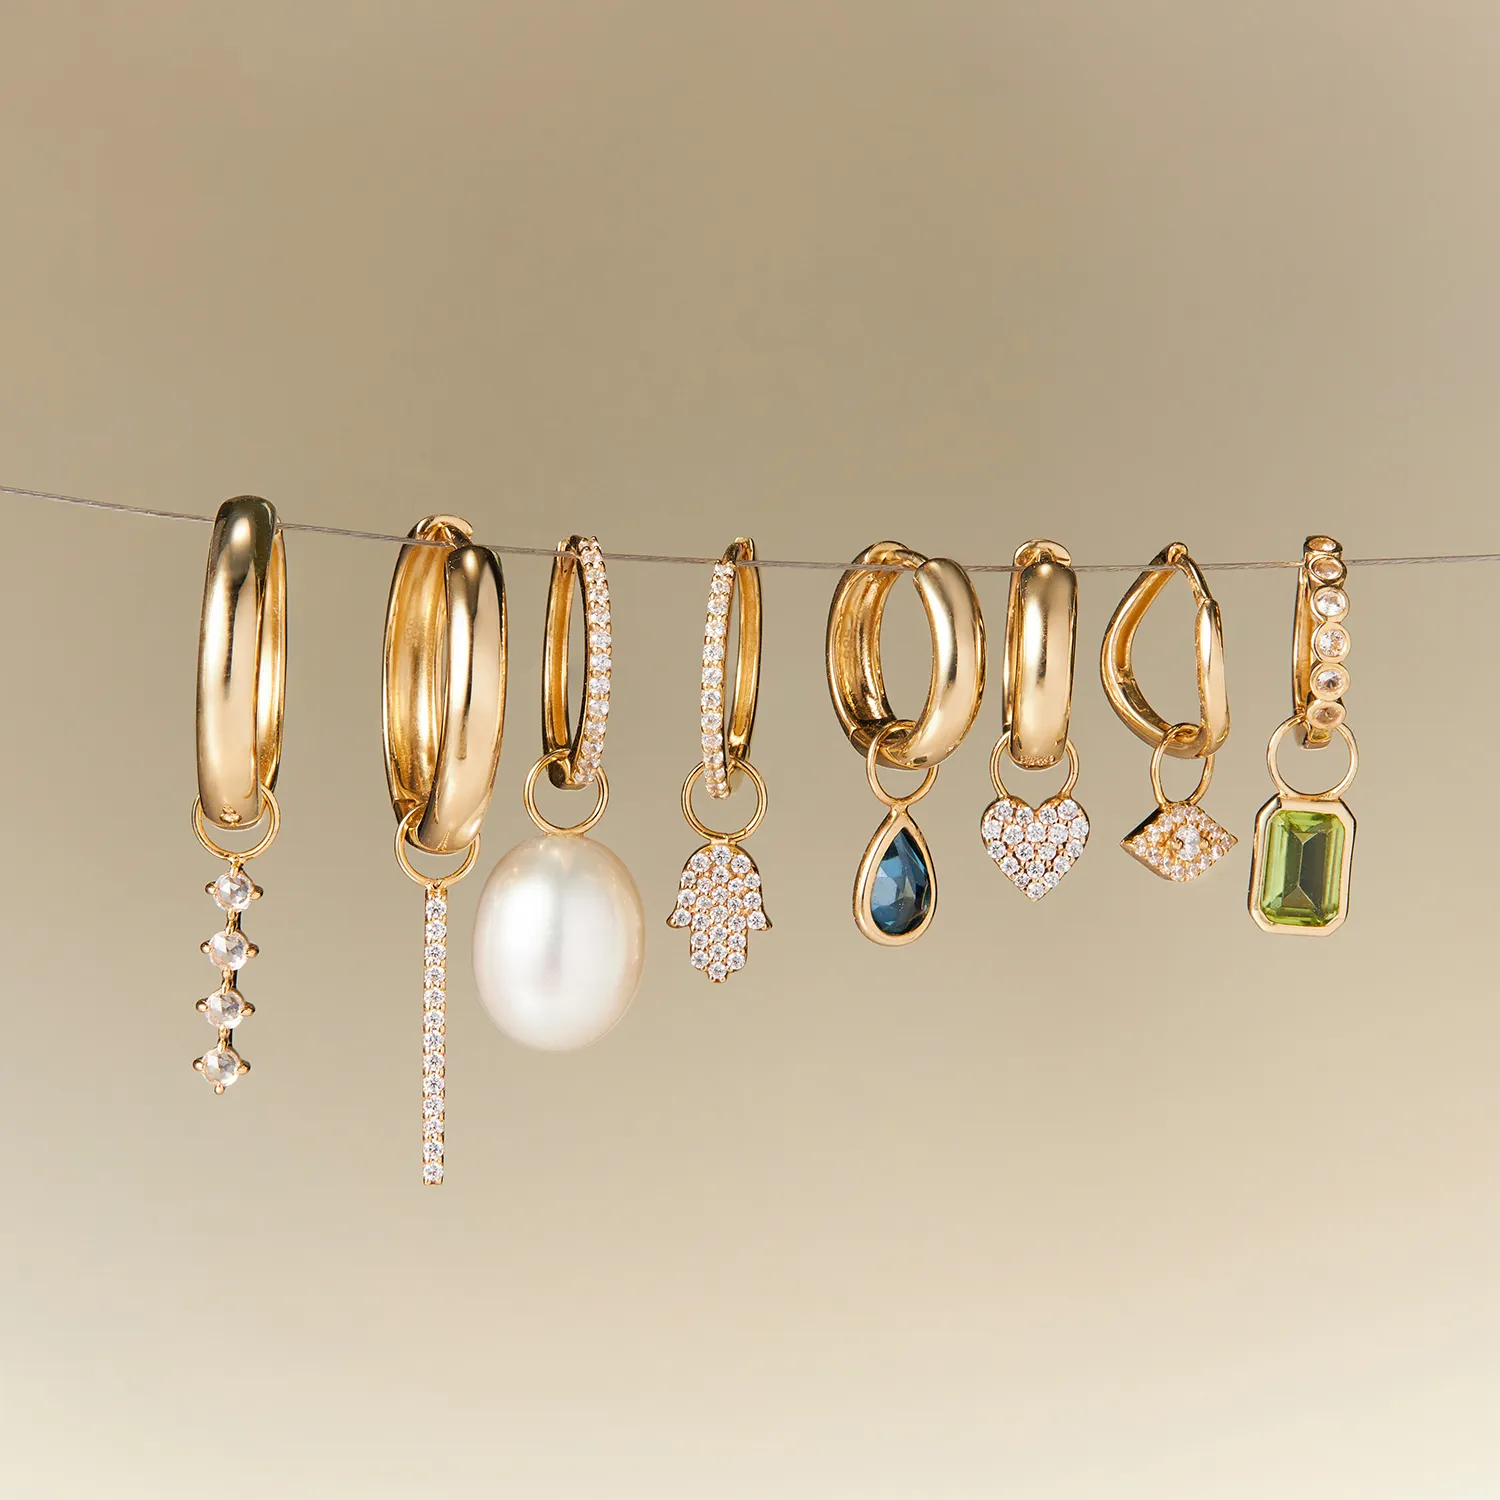 VLOVE Forecast pendentif personnalisé OEM ODM perle bijoux personnalisés accessoires trouver 14K or massif bijoux boucle d'oreille bricolage charme